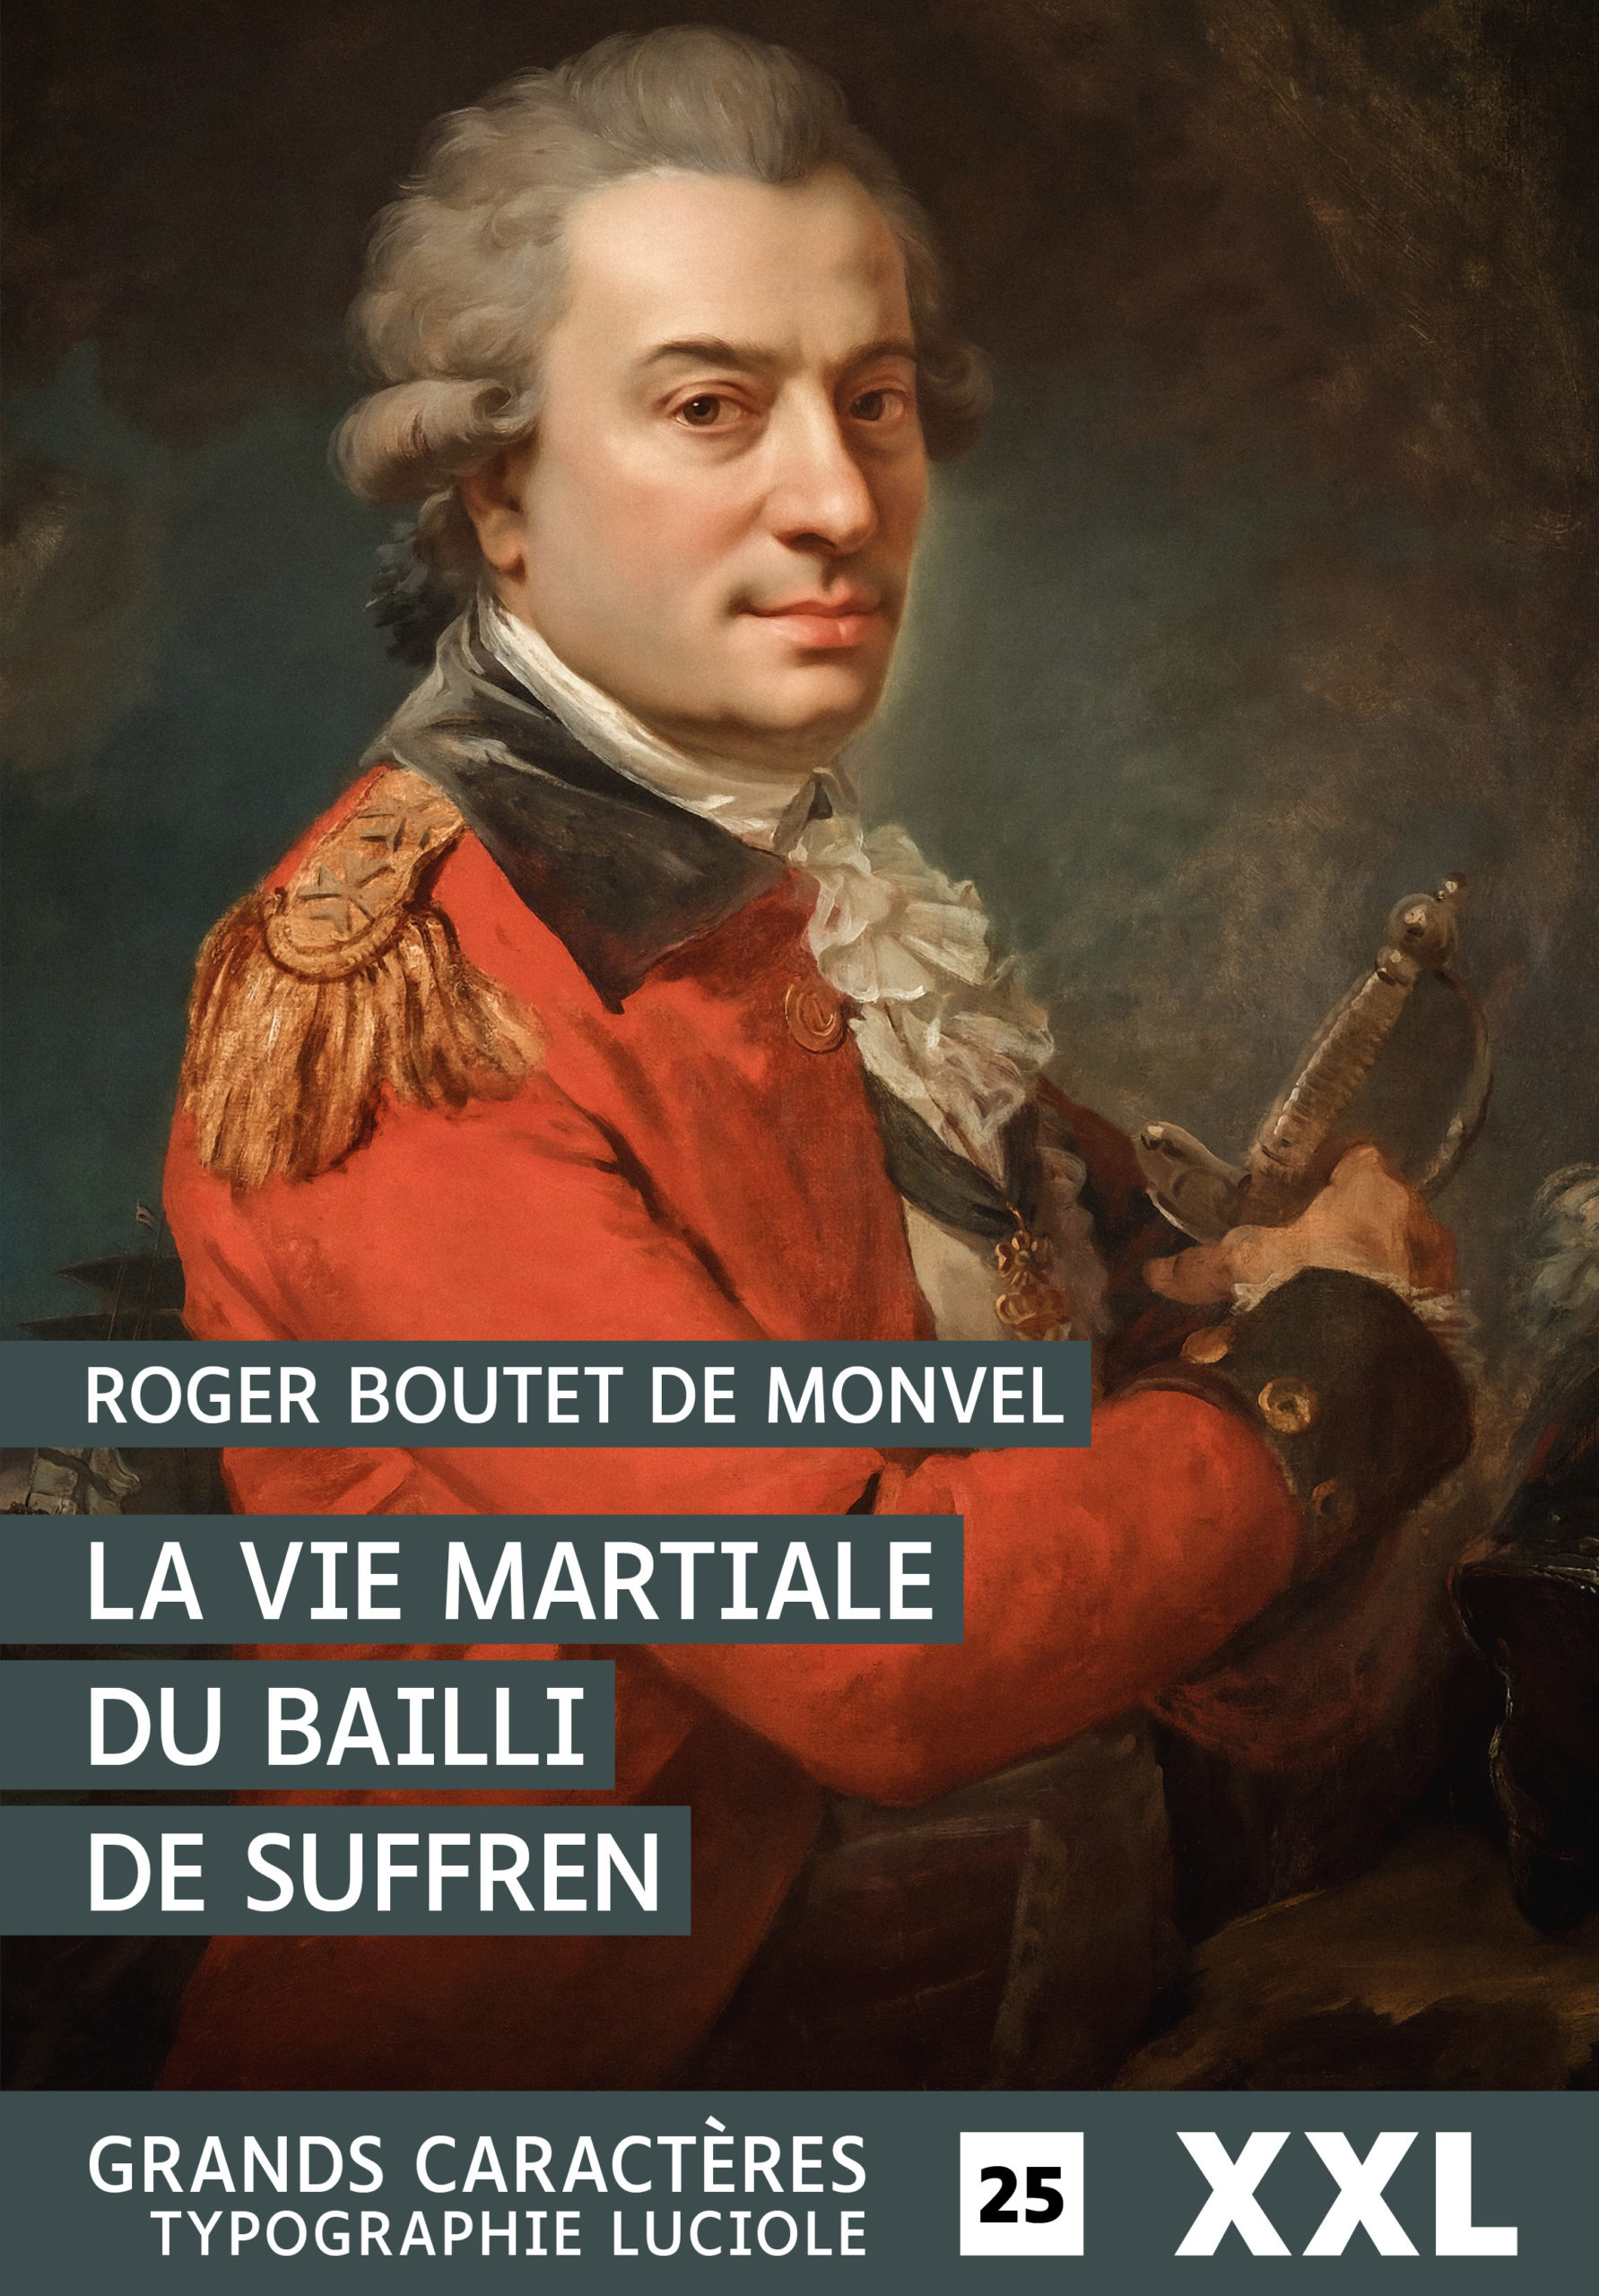 Couverture de La Vie martiale du Bailly de Suffren de Roger Boutet de Monvel - Format XXL